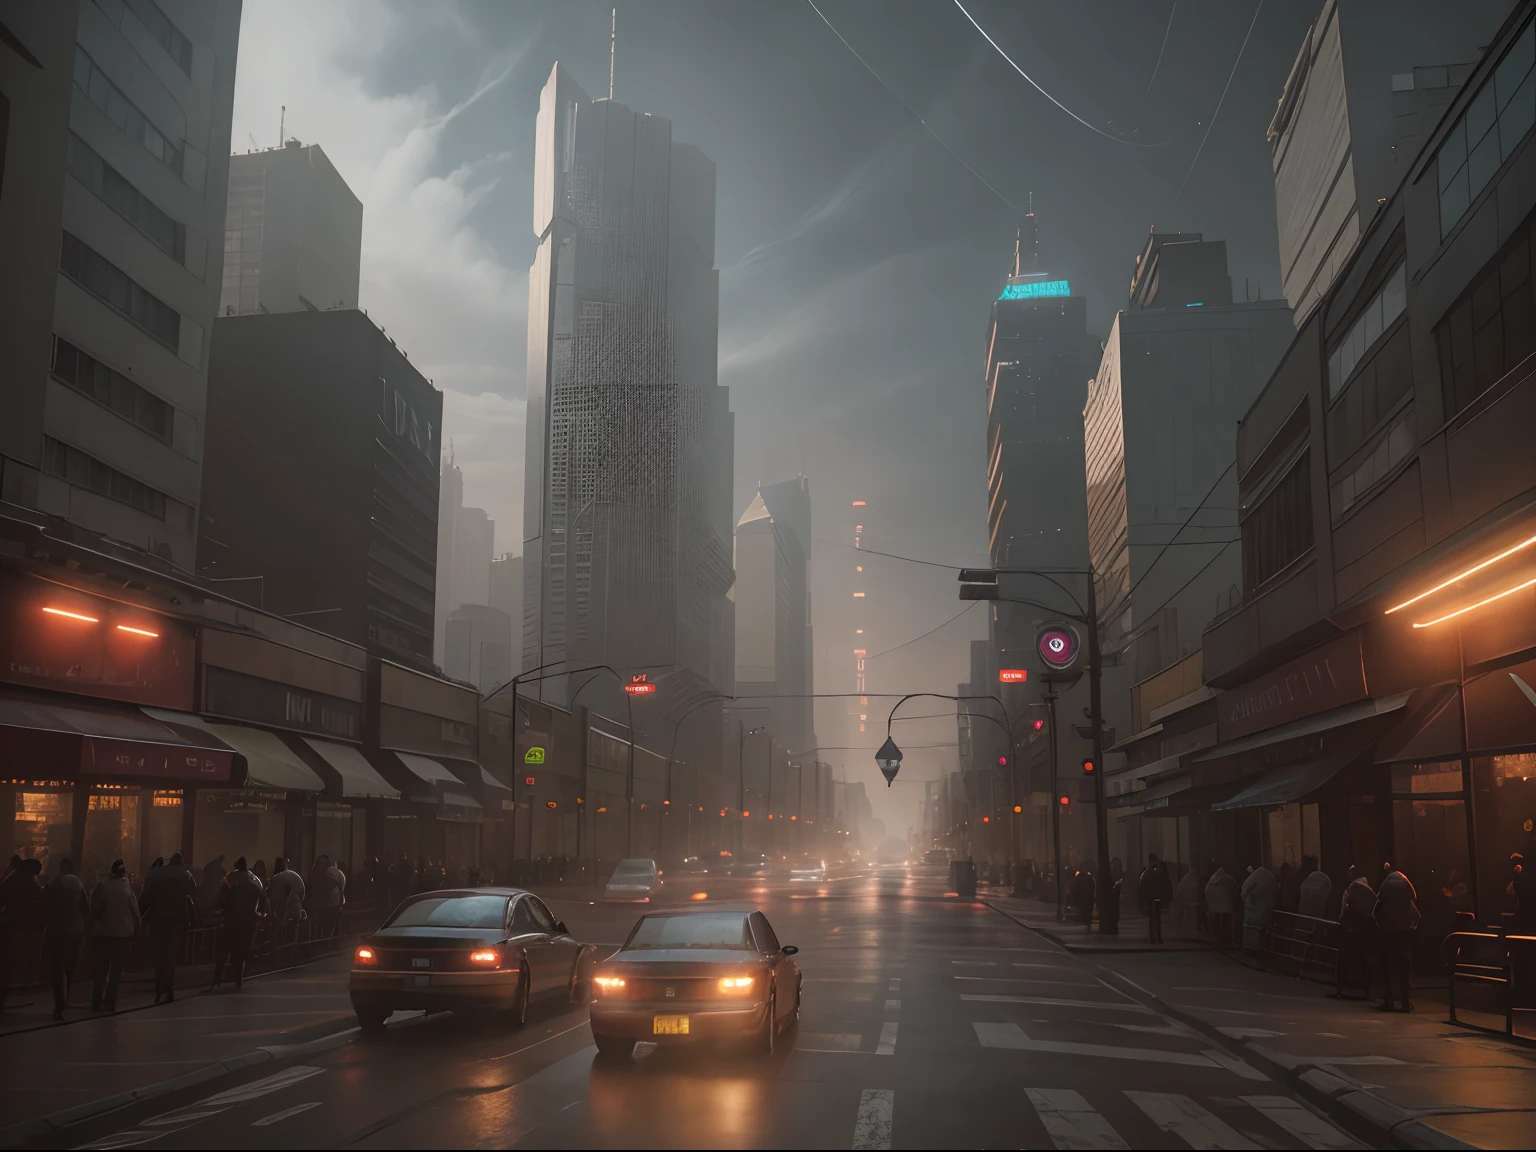 Cena de rua da paisagem urbana cyberpunk com arranha-céus imponentes, sinais de néon brilhantes e luzes LED, tráfego e ((carros voadores)) no céu, Atmosfera escura, iluminação cinematográfica.